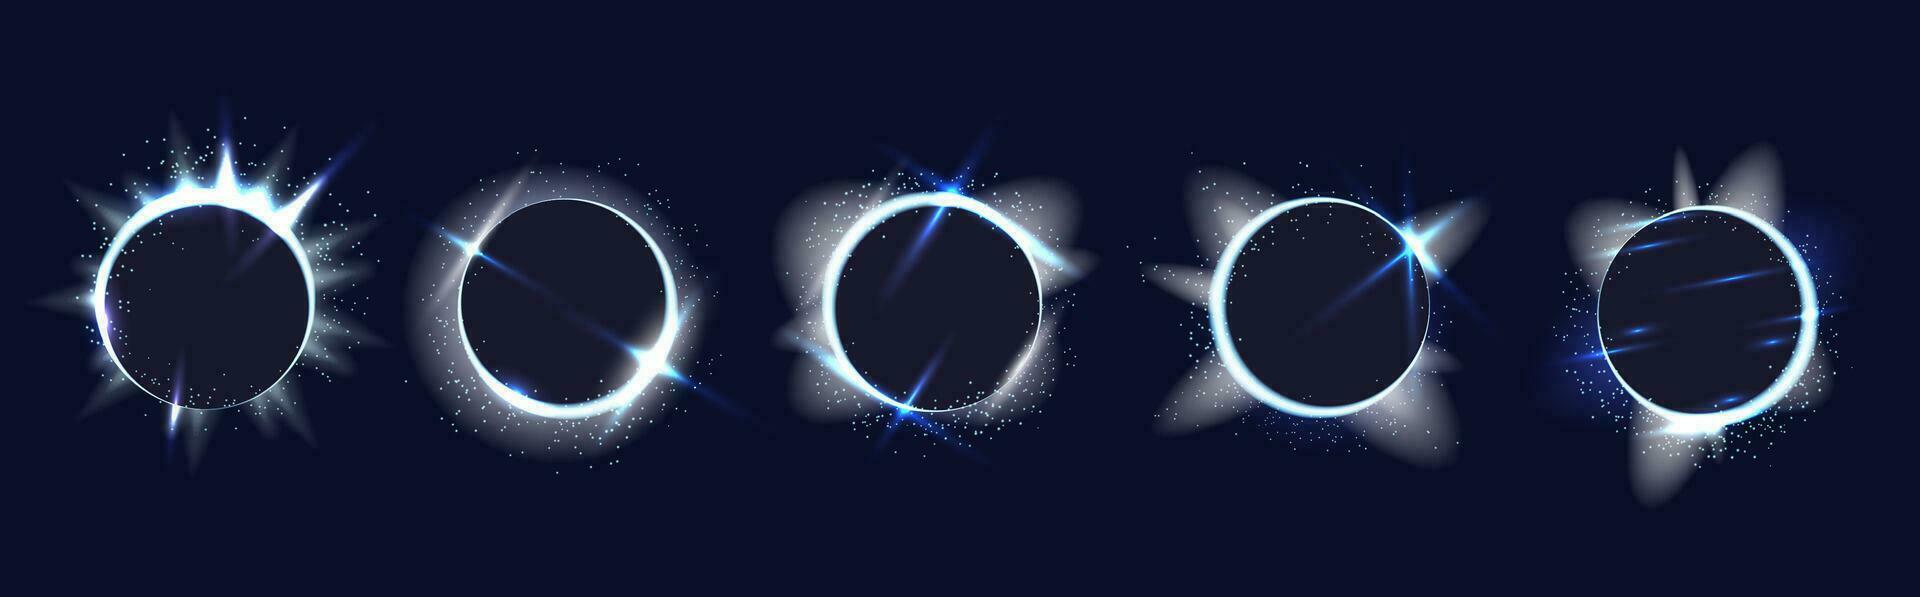 conjunto de brillante plata anillos con luz, estrellas y parpadea alrededor, cinco redondo imagen marcos, vector decorativo gráficos con realista ligero efectos